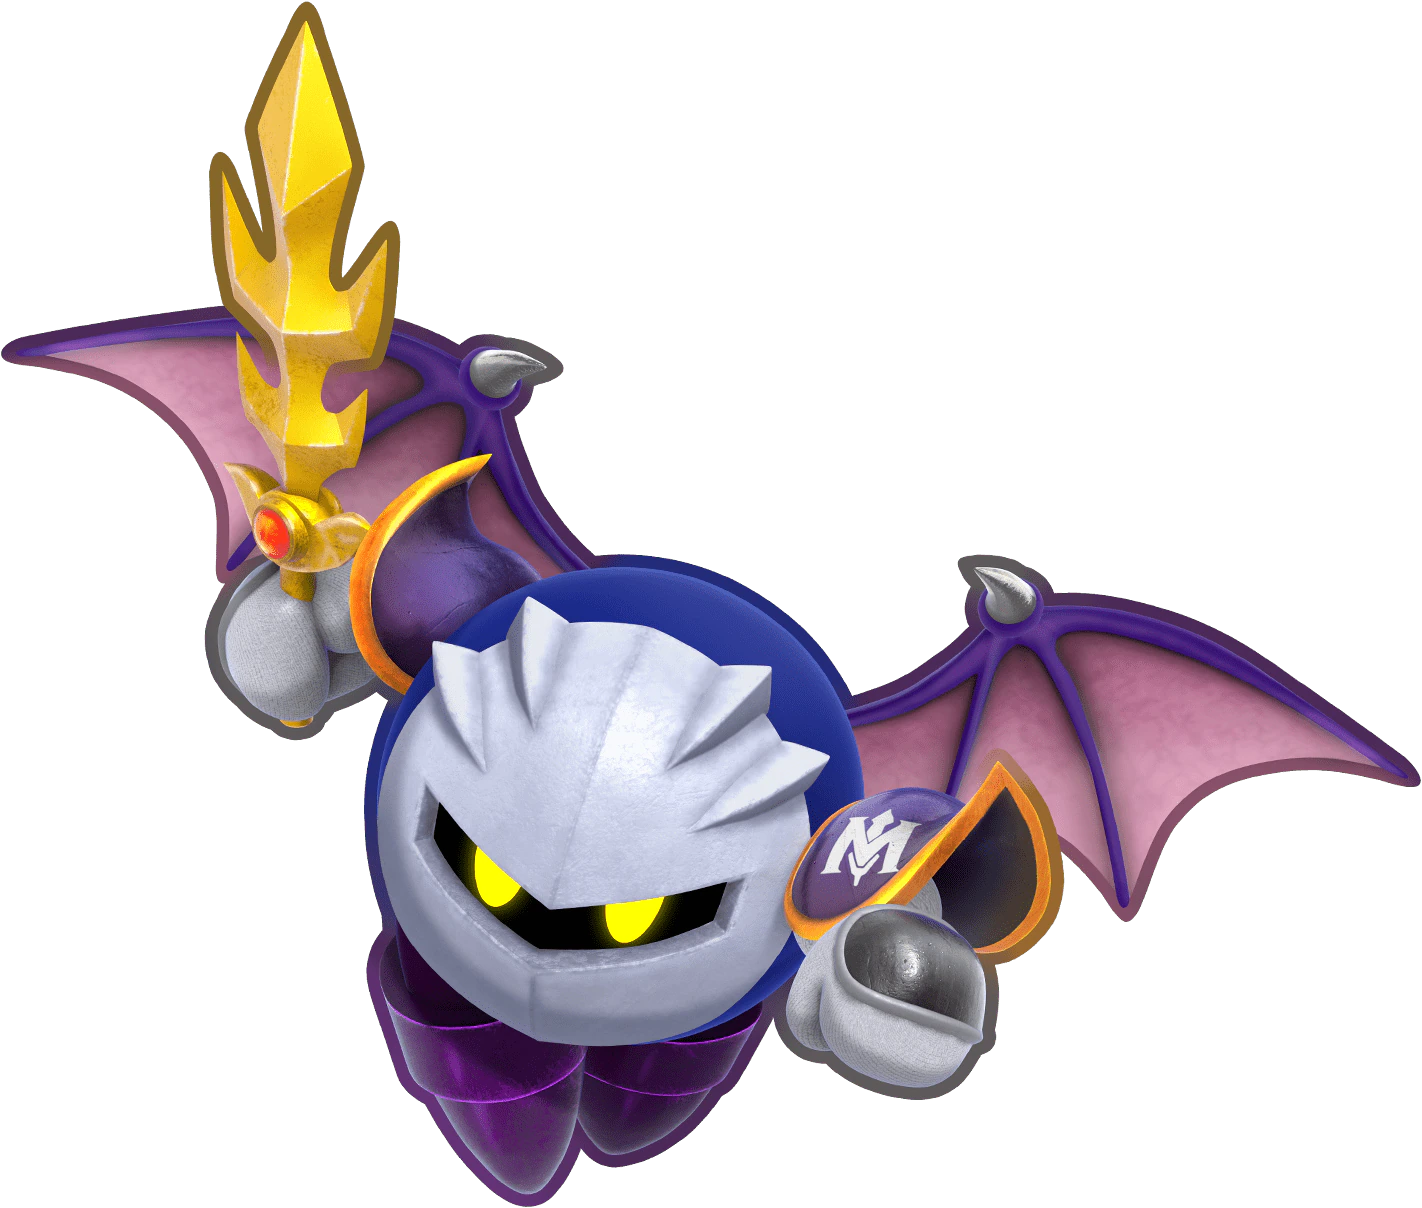 Meta Knight | Kirby Wiki | Fandom